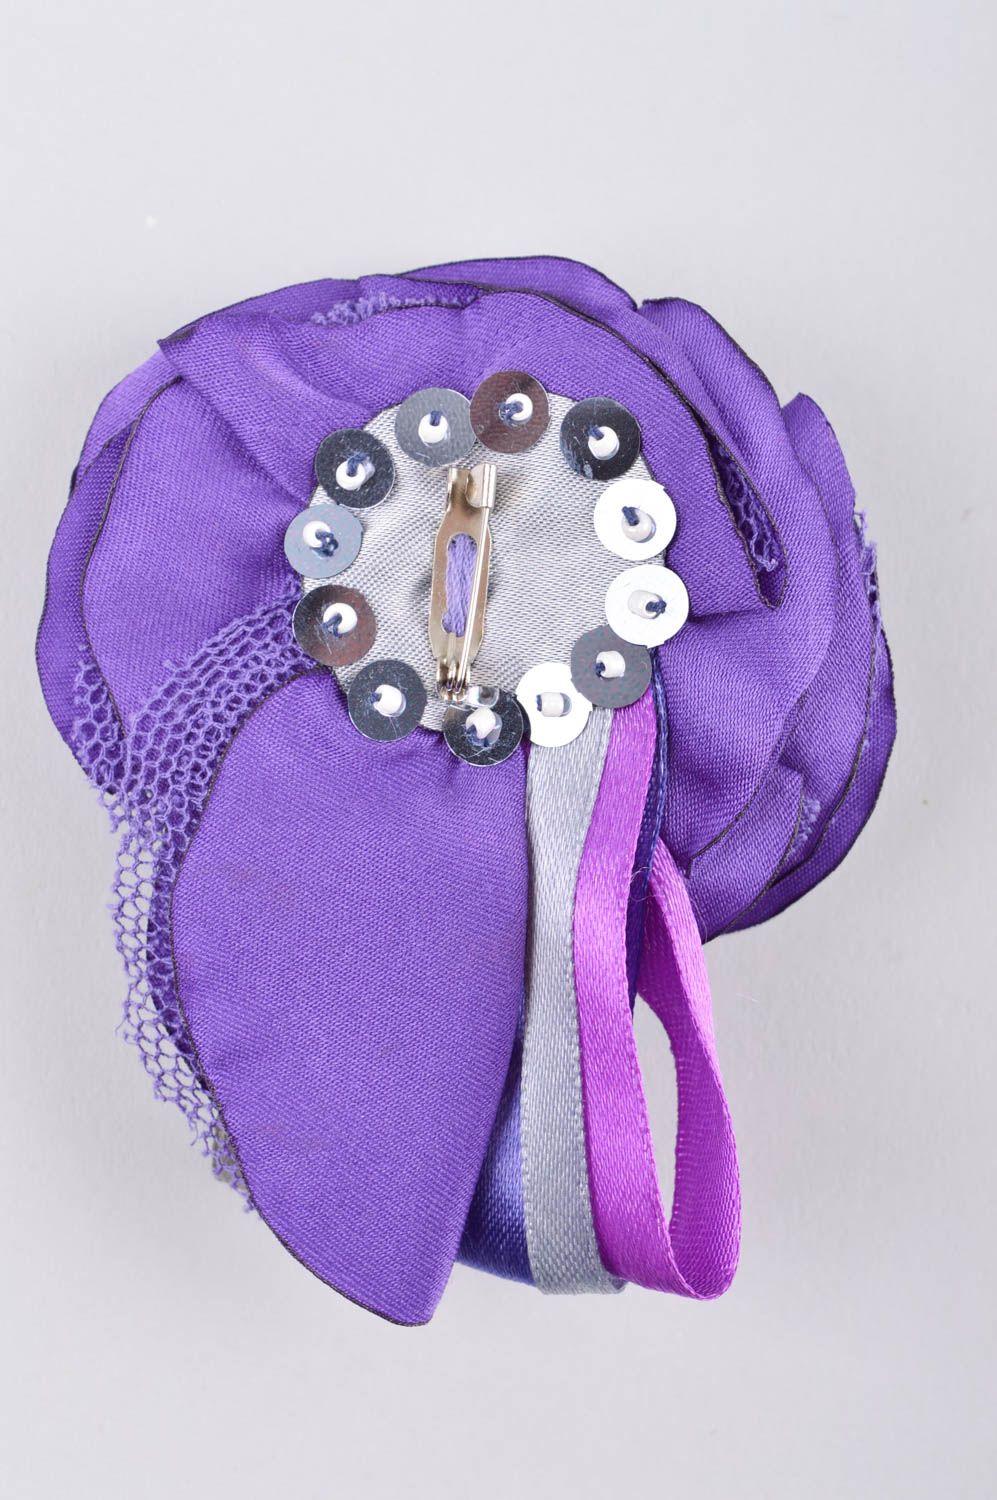 Брошь ручной работы бижутерия брошь фиолетовая текстильная брошь красивая фото 3